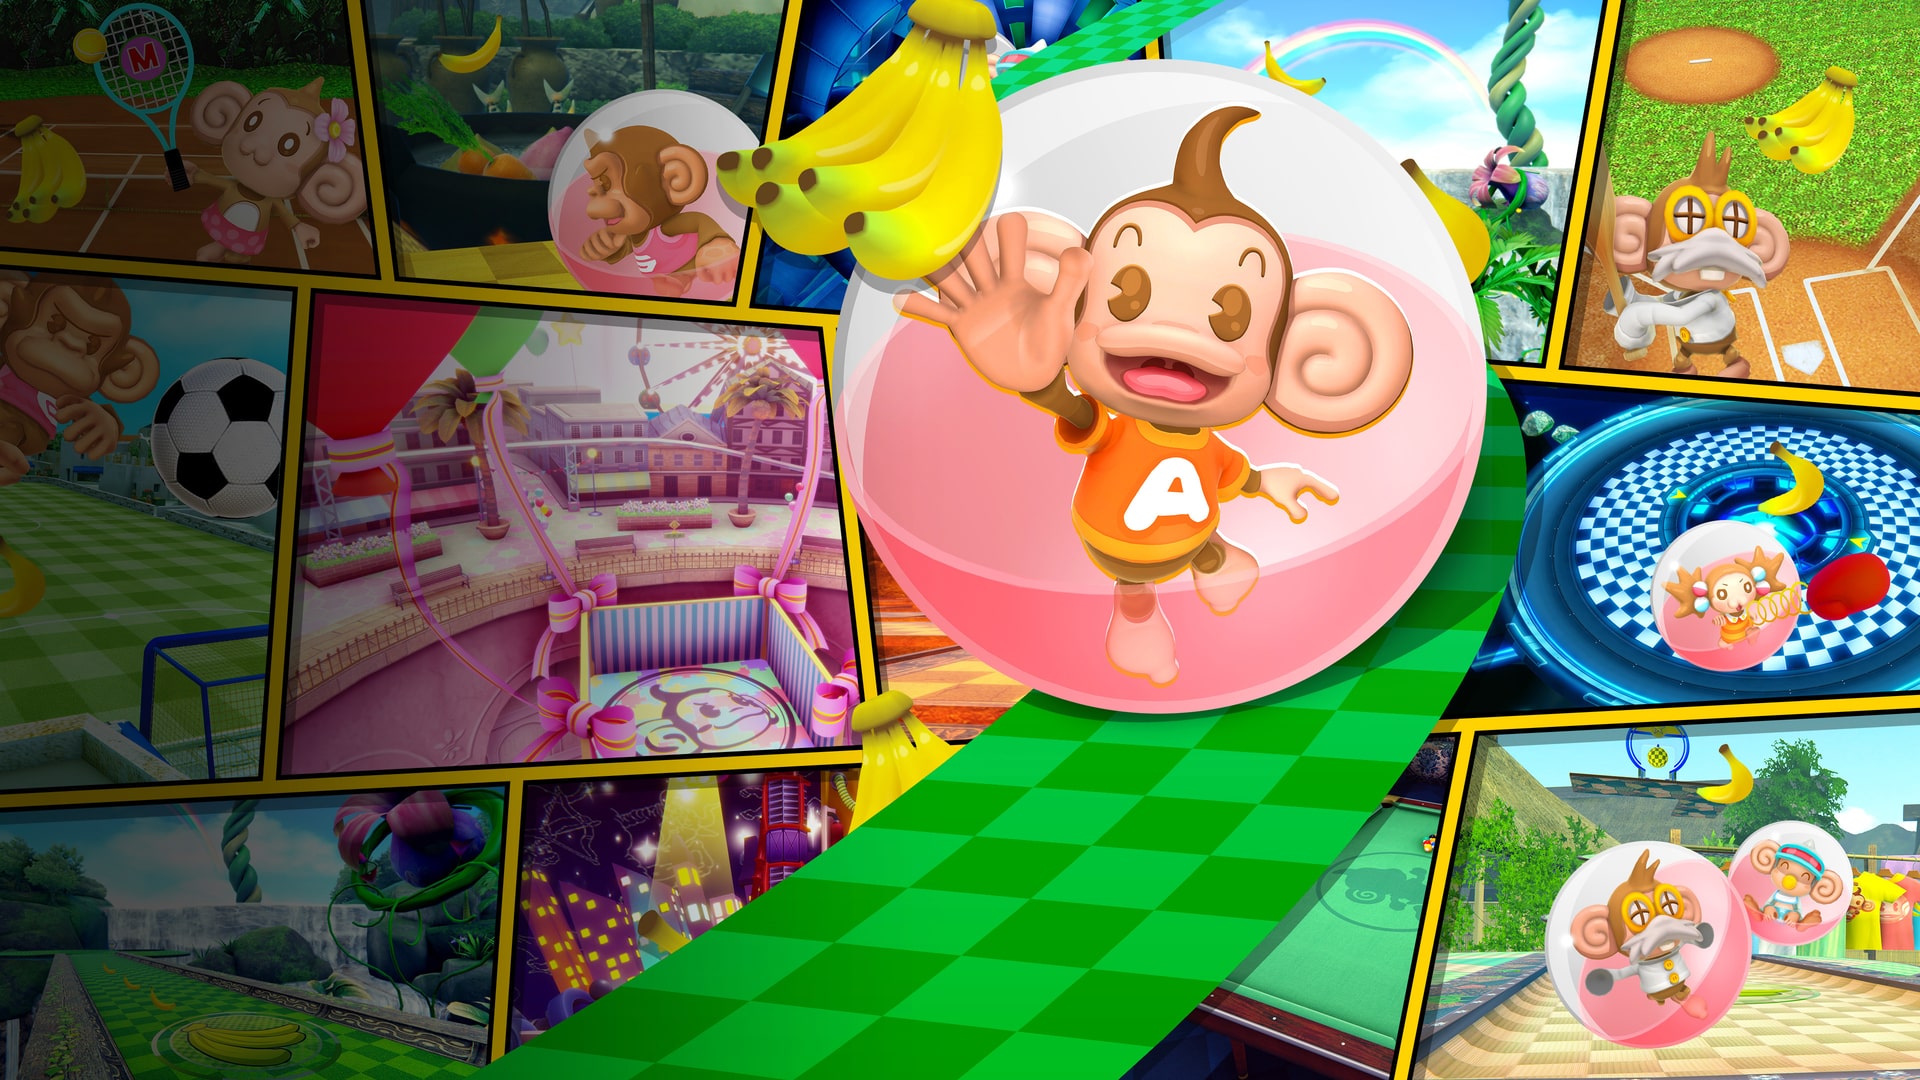 Jogo Super Monkey Ball Banana Mania - PS4